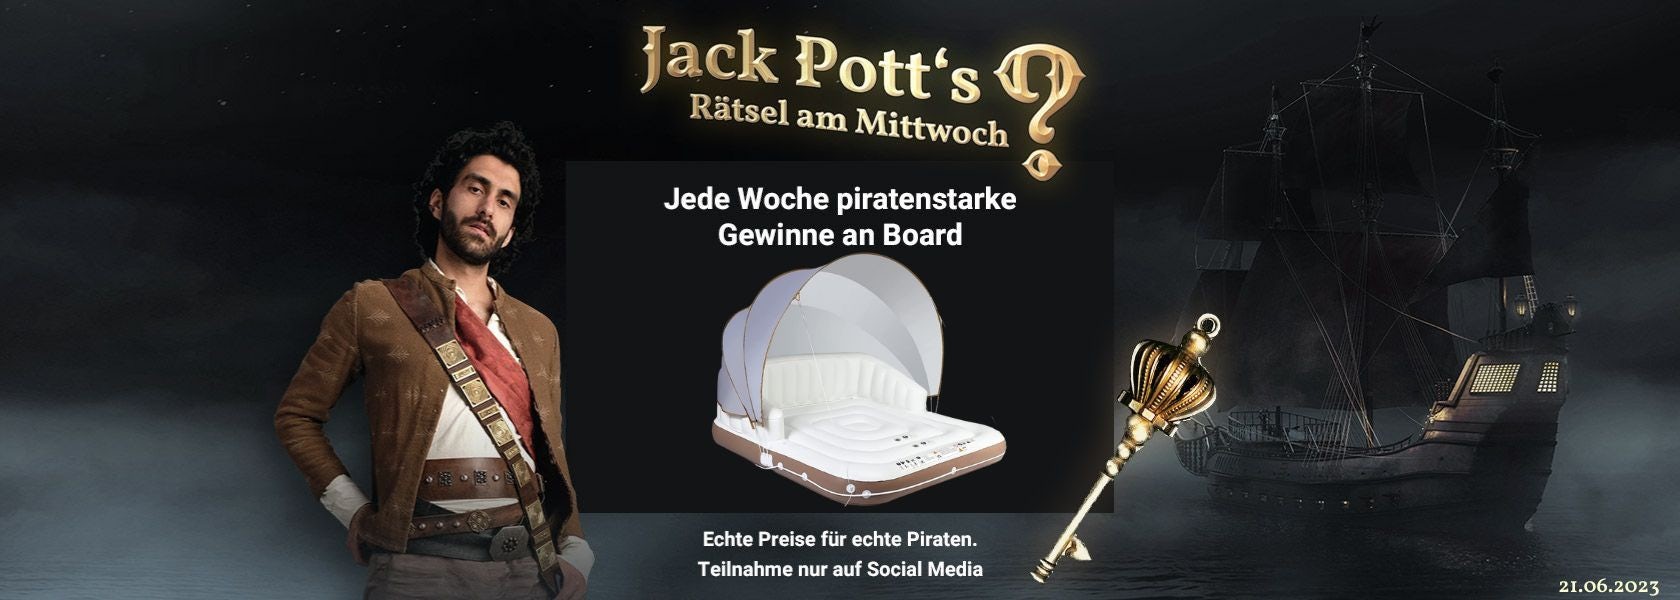 JPI-Header-Jack-Potts-Rätsel-Am-Mittwoch-2106